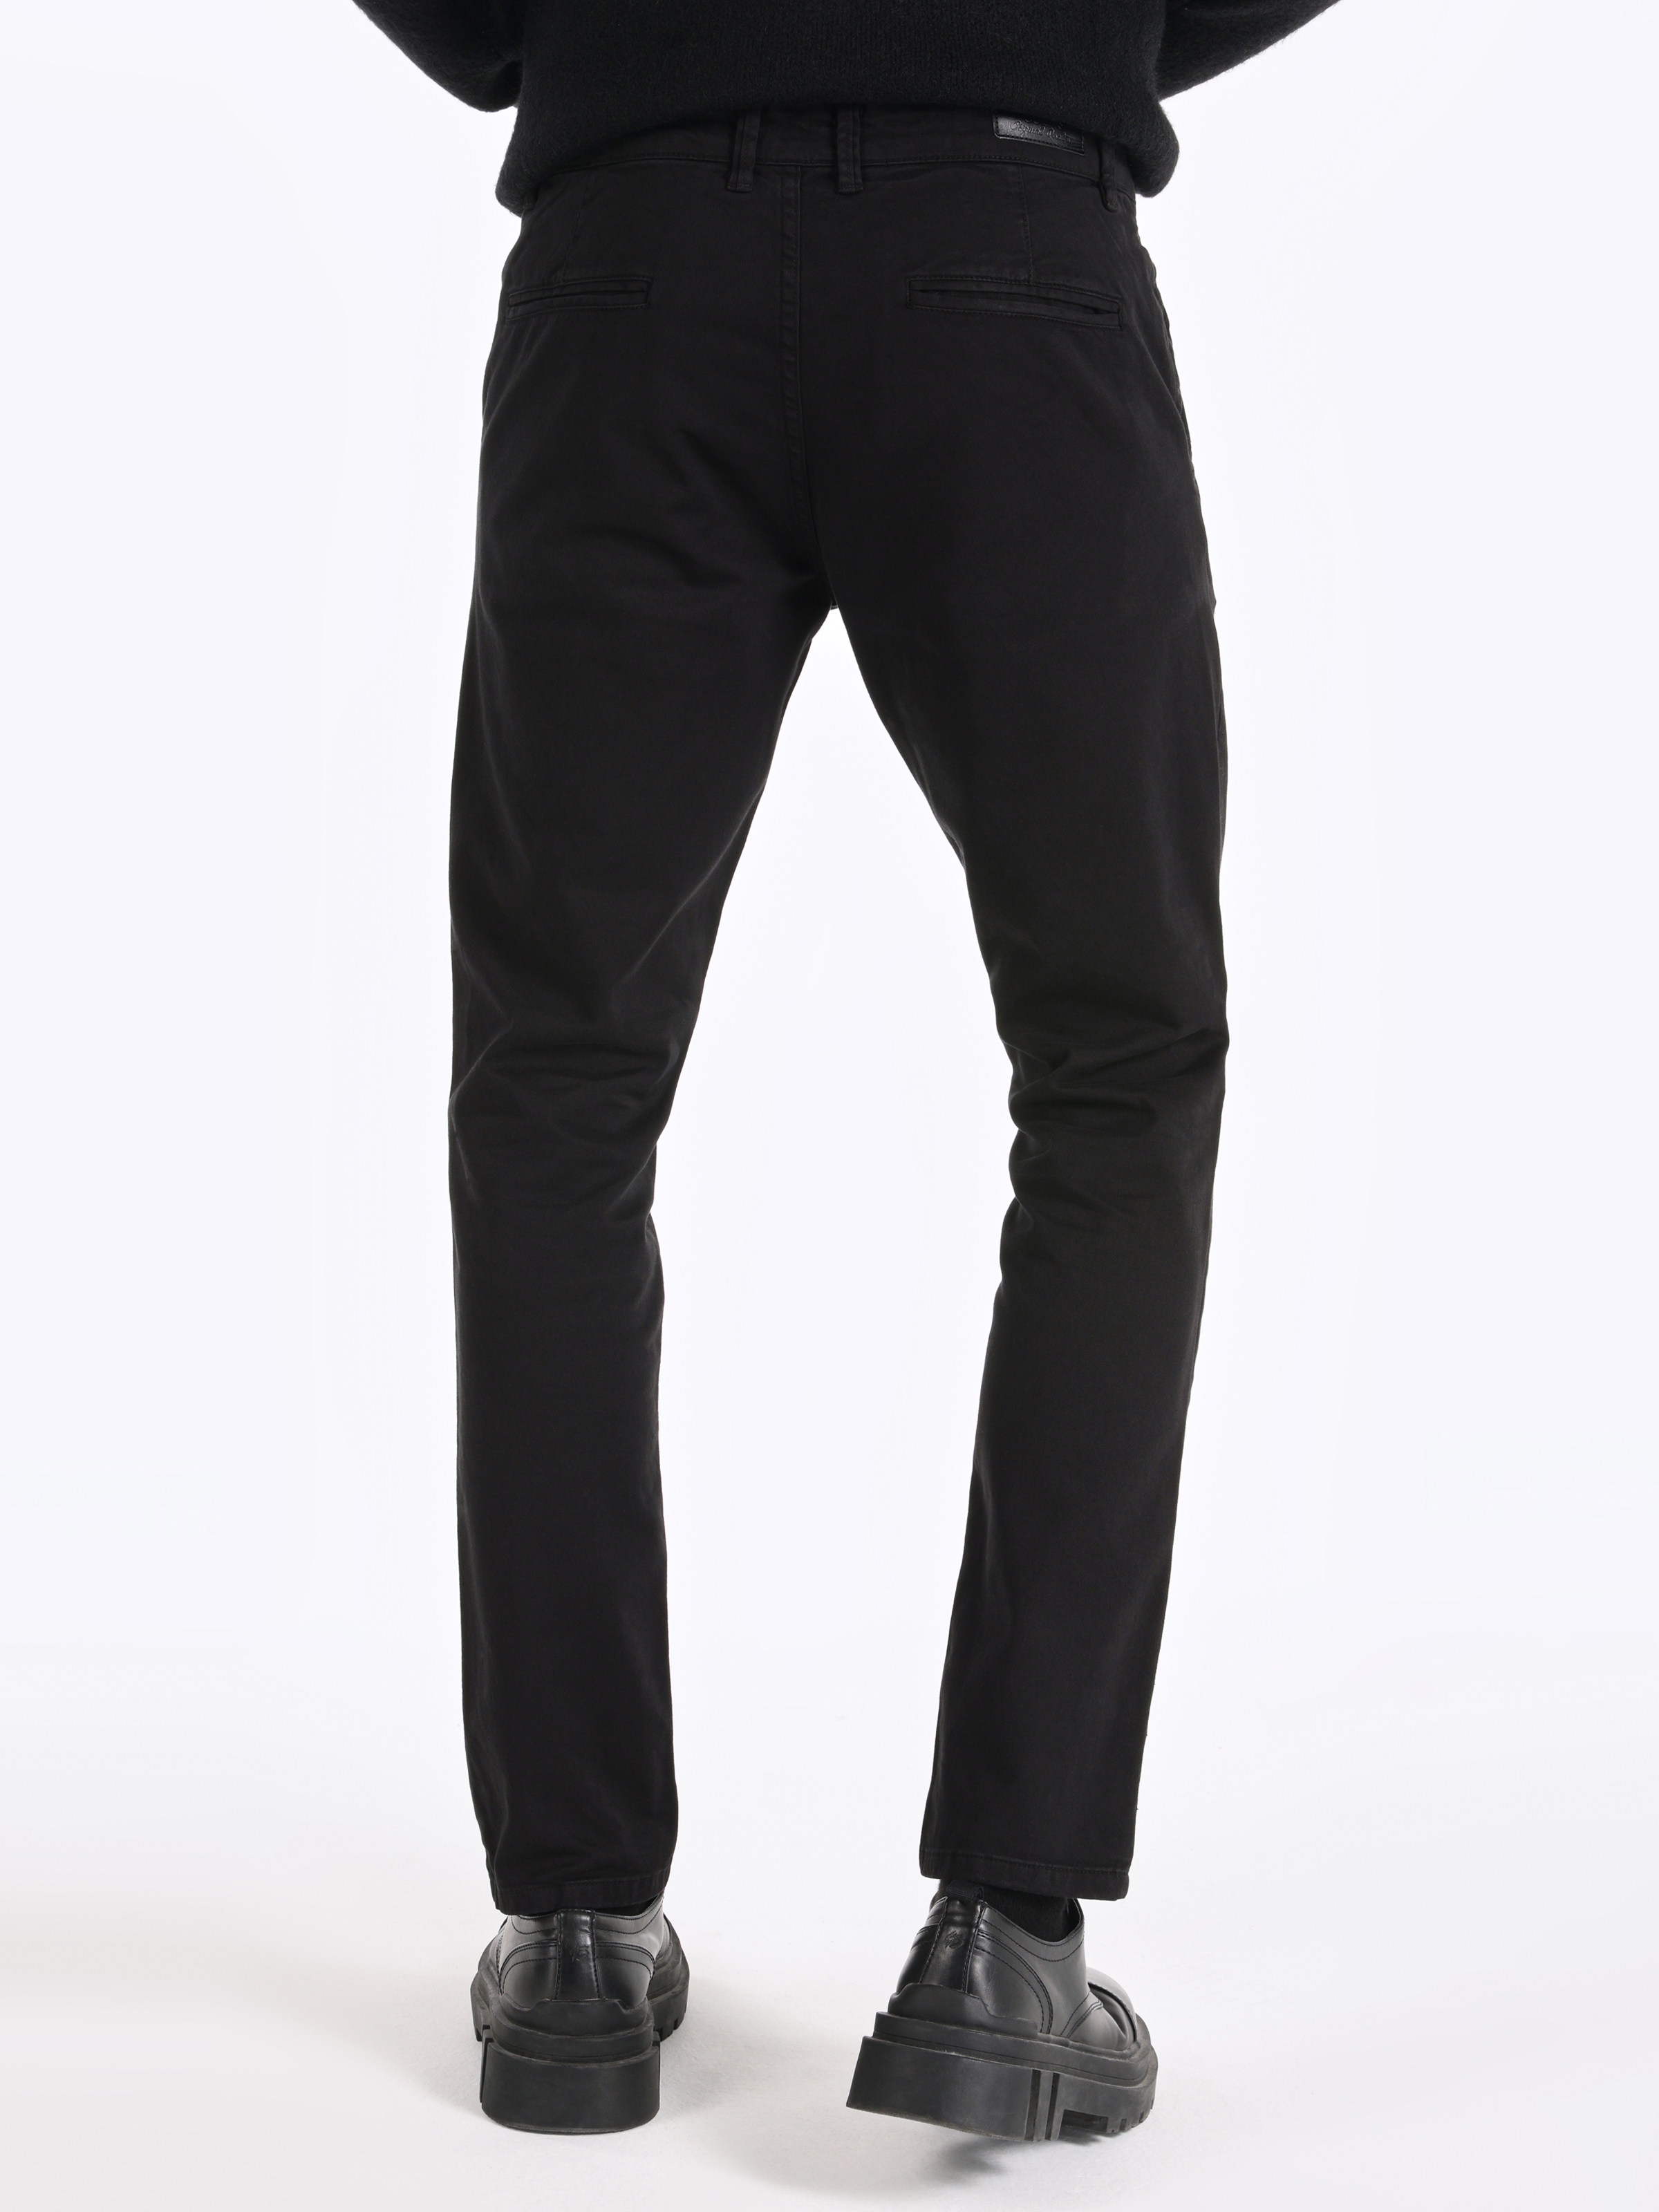 Afficher les détails de Pantalon Noir Pour Hommes, Coupe Slim, Taille Moyenne, Jambe Droite